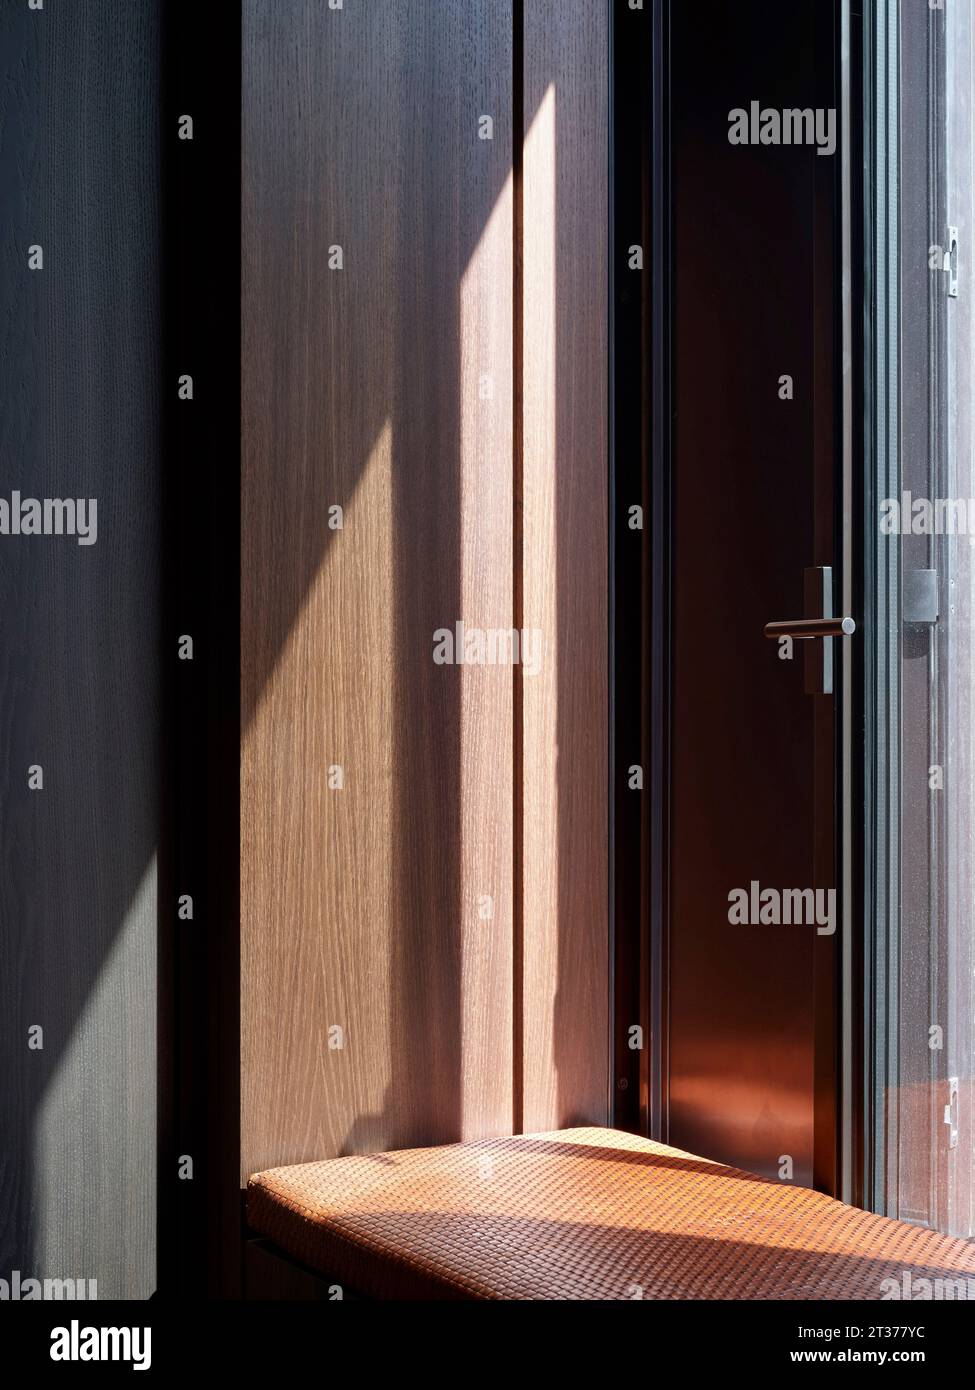 Siège de fenêtre et menuiserie. Mount Row Apartments, Londres, Royaume-Uni. Architecte : Studio Mackereth, 2023. Banque D'Images